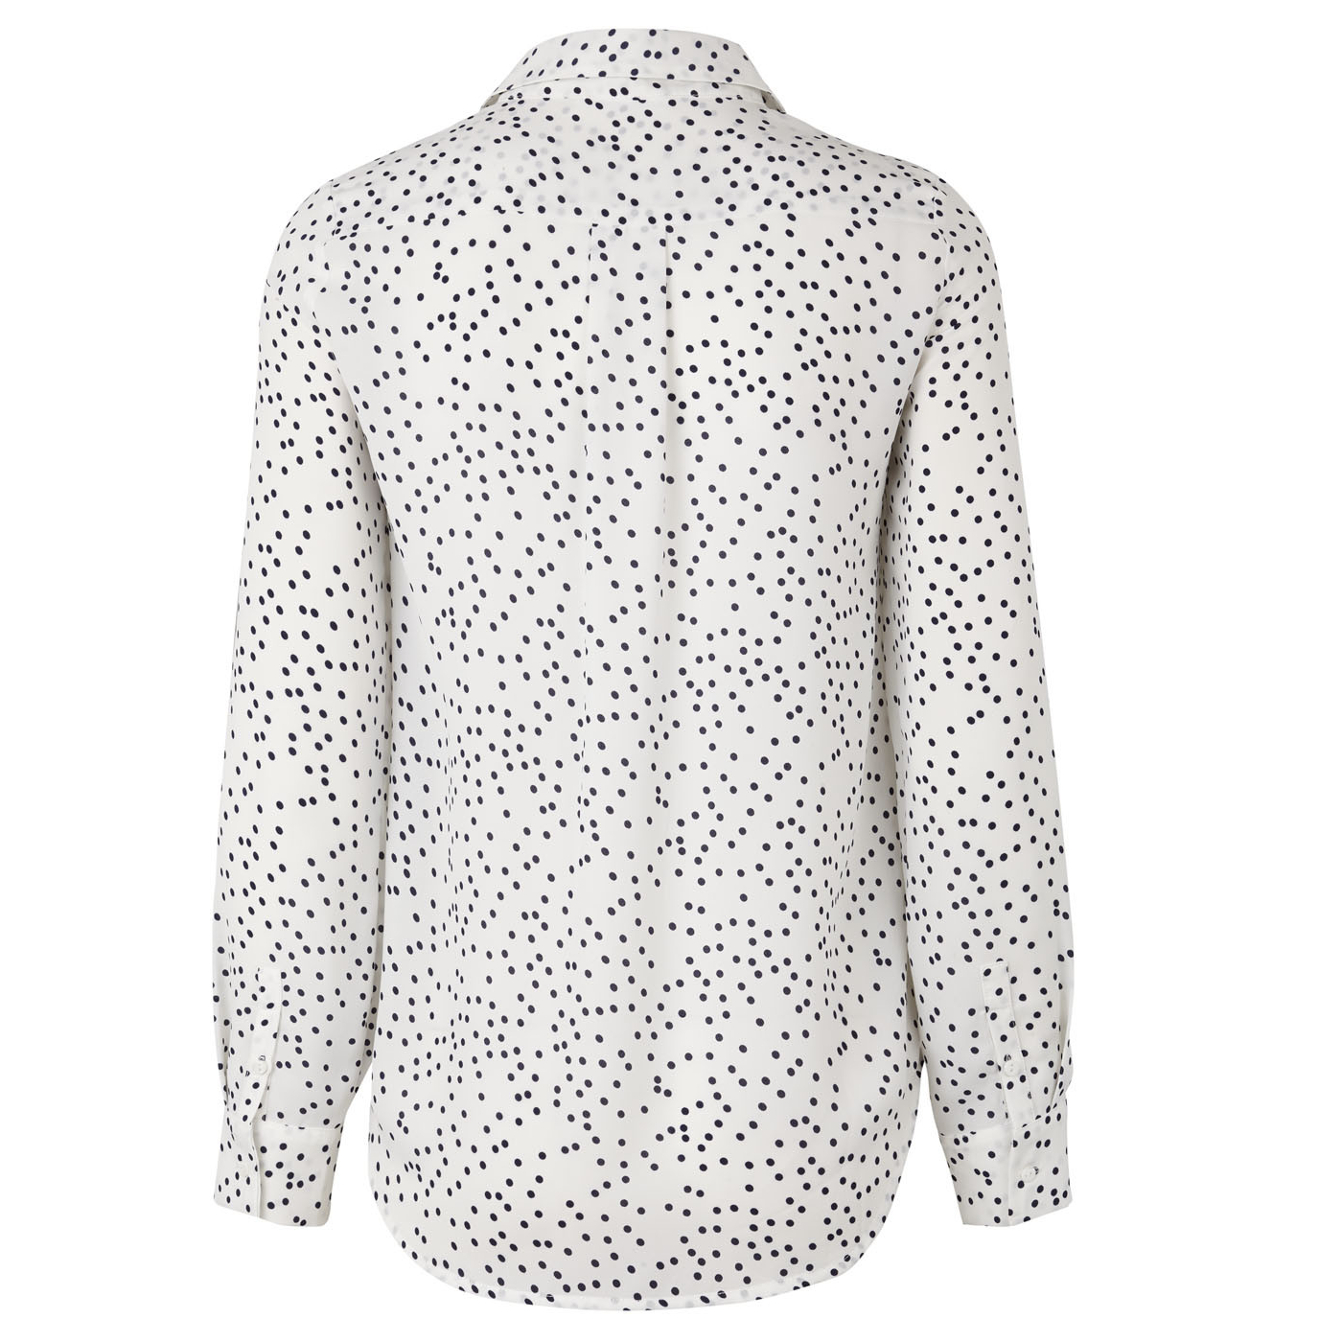 Kjær København | STOCKHOLMSGADE shirt | hvid skjorte med prikker - hoshii